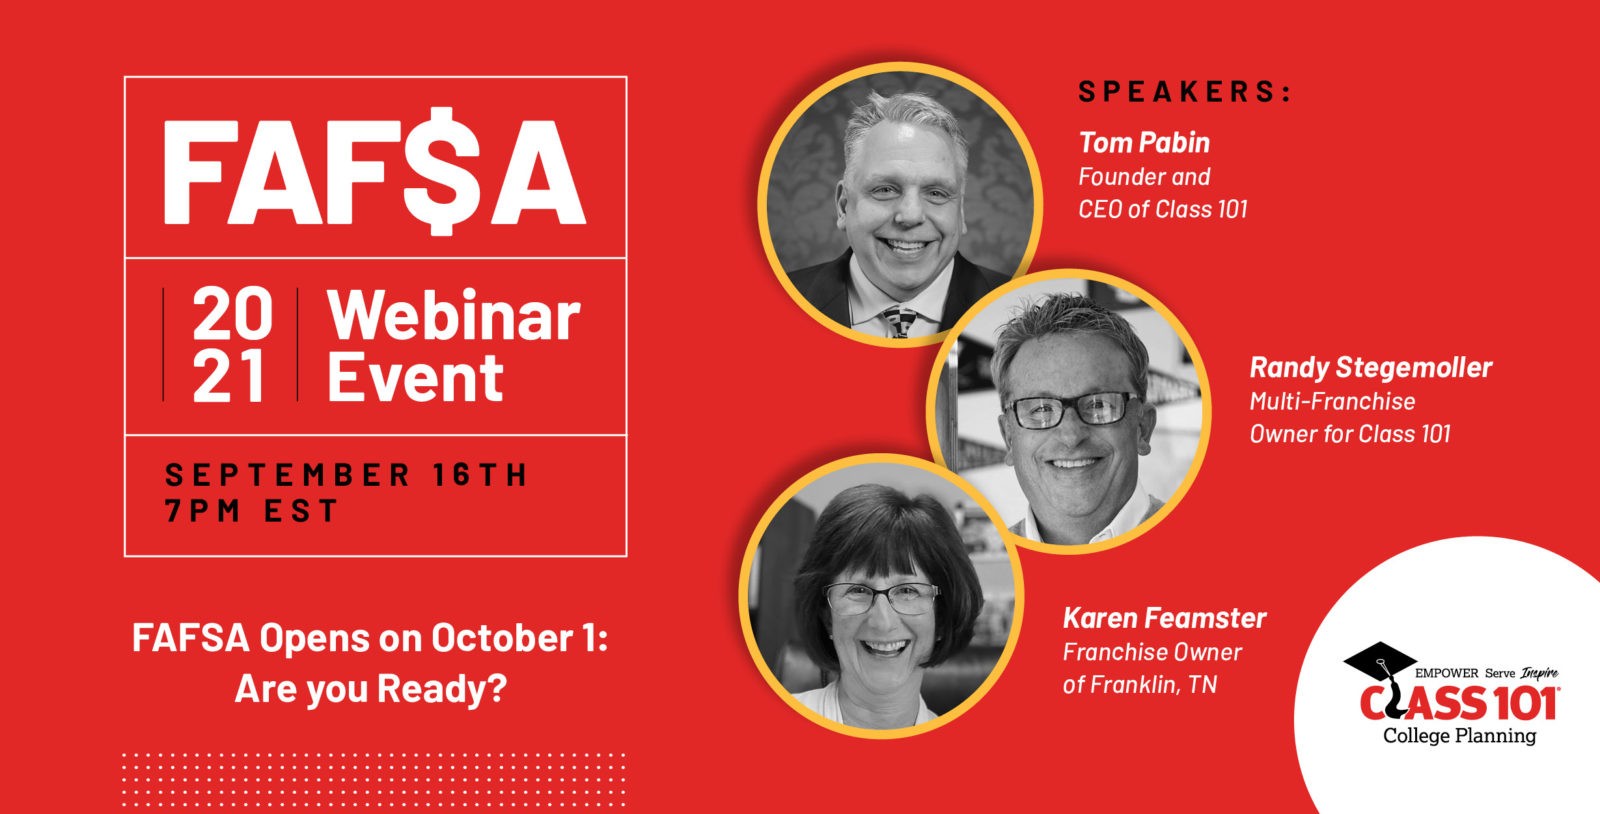 FAFSA Oct 1 Webinar Event: About the FAFSA